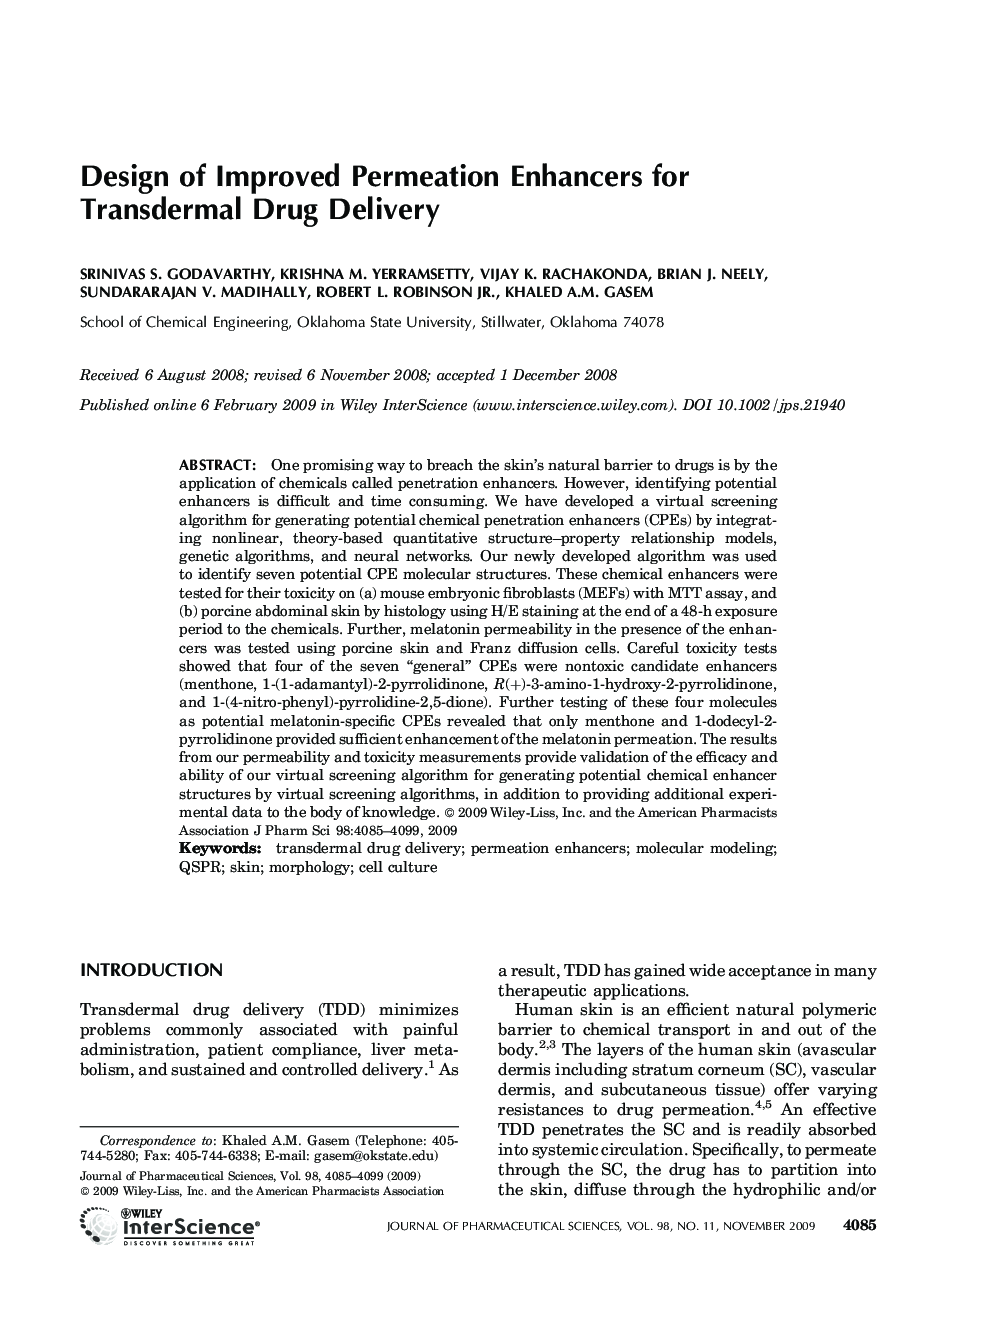 Design of improved permeation enhancers for transdermal drug delivery